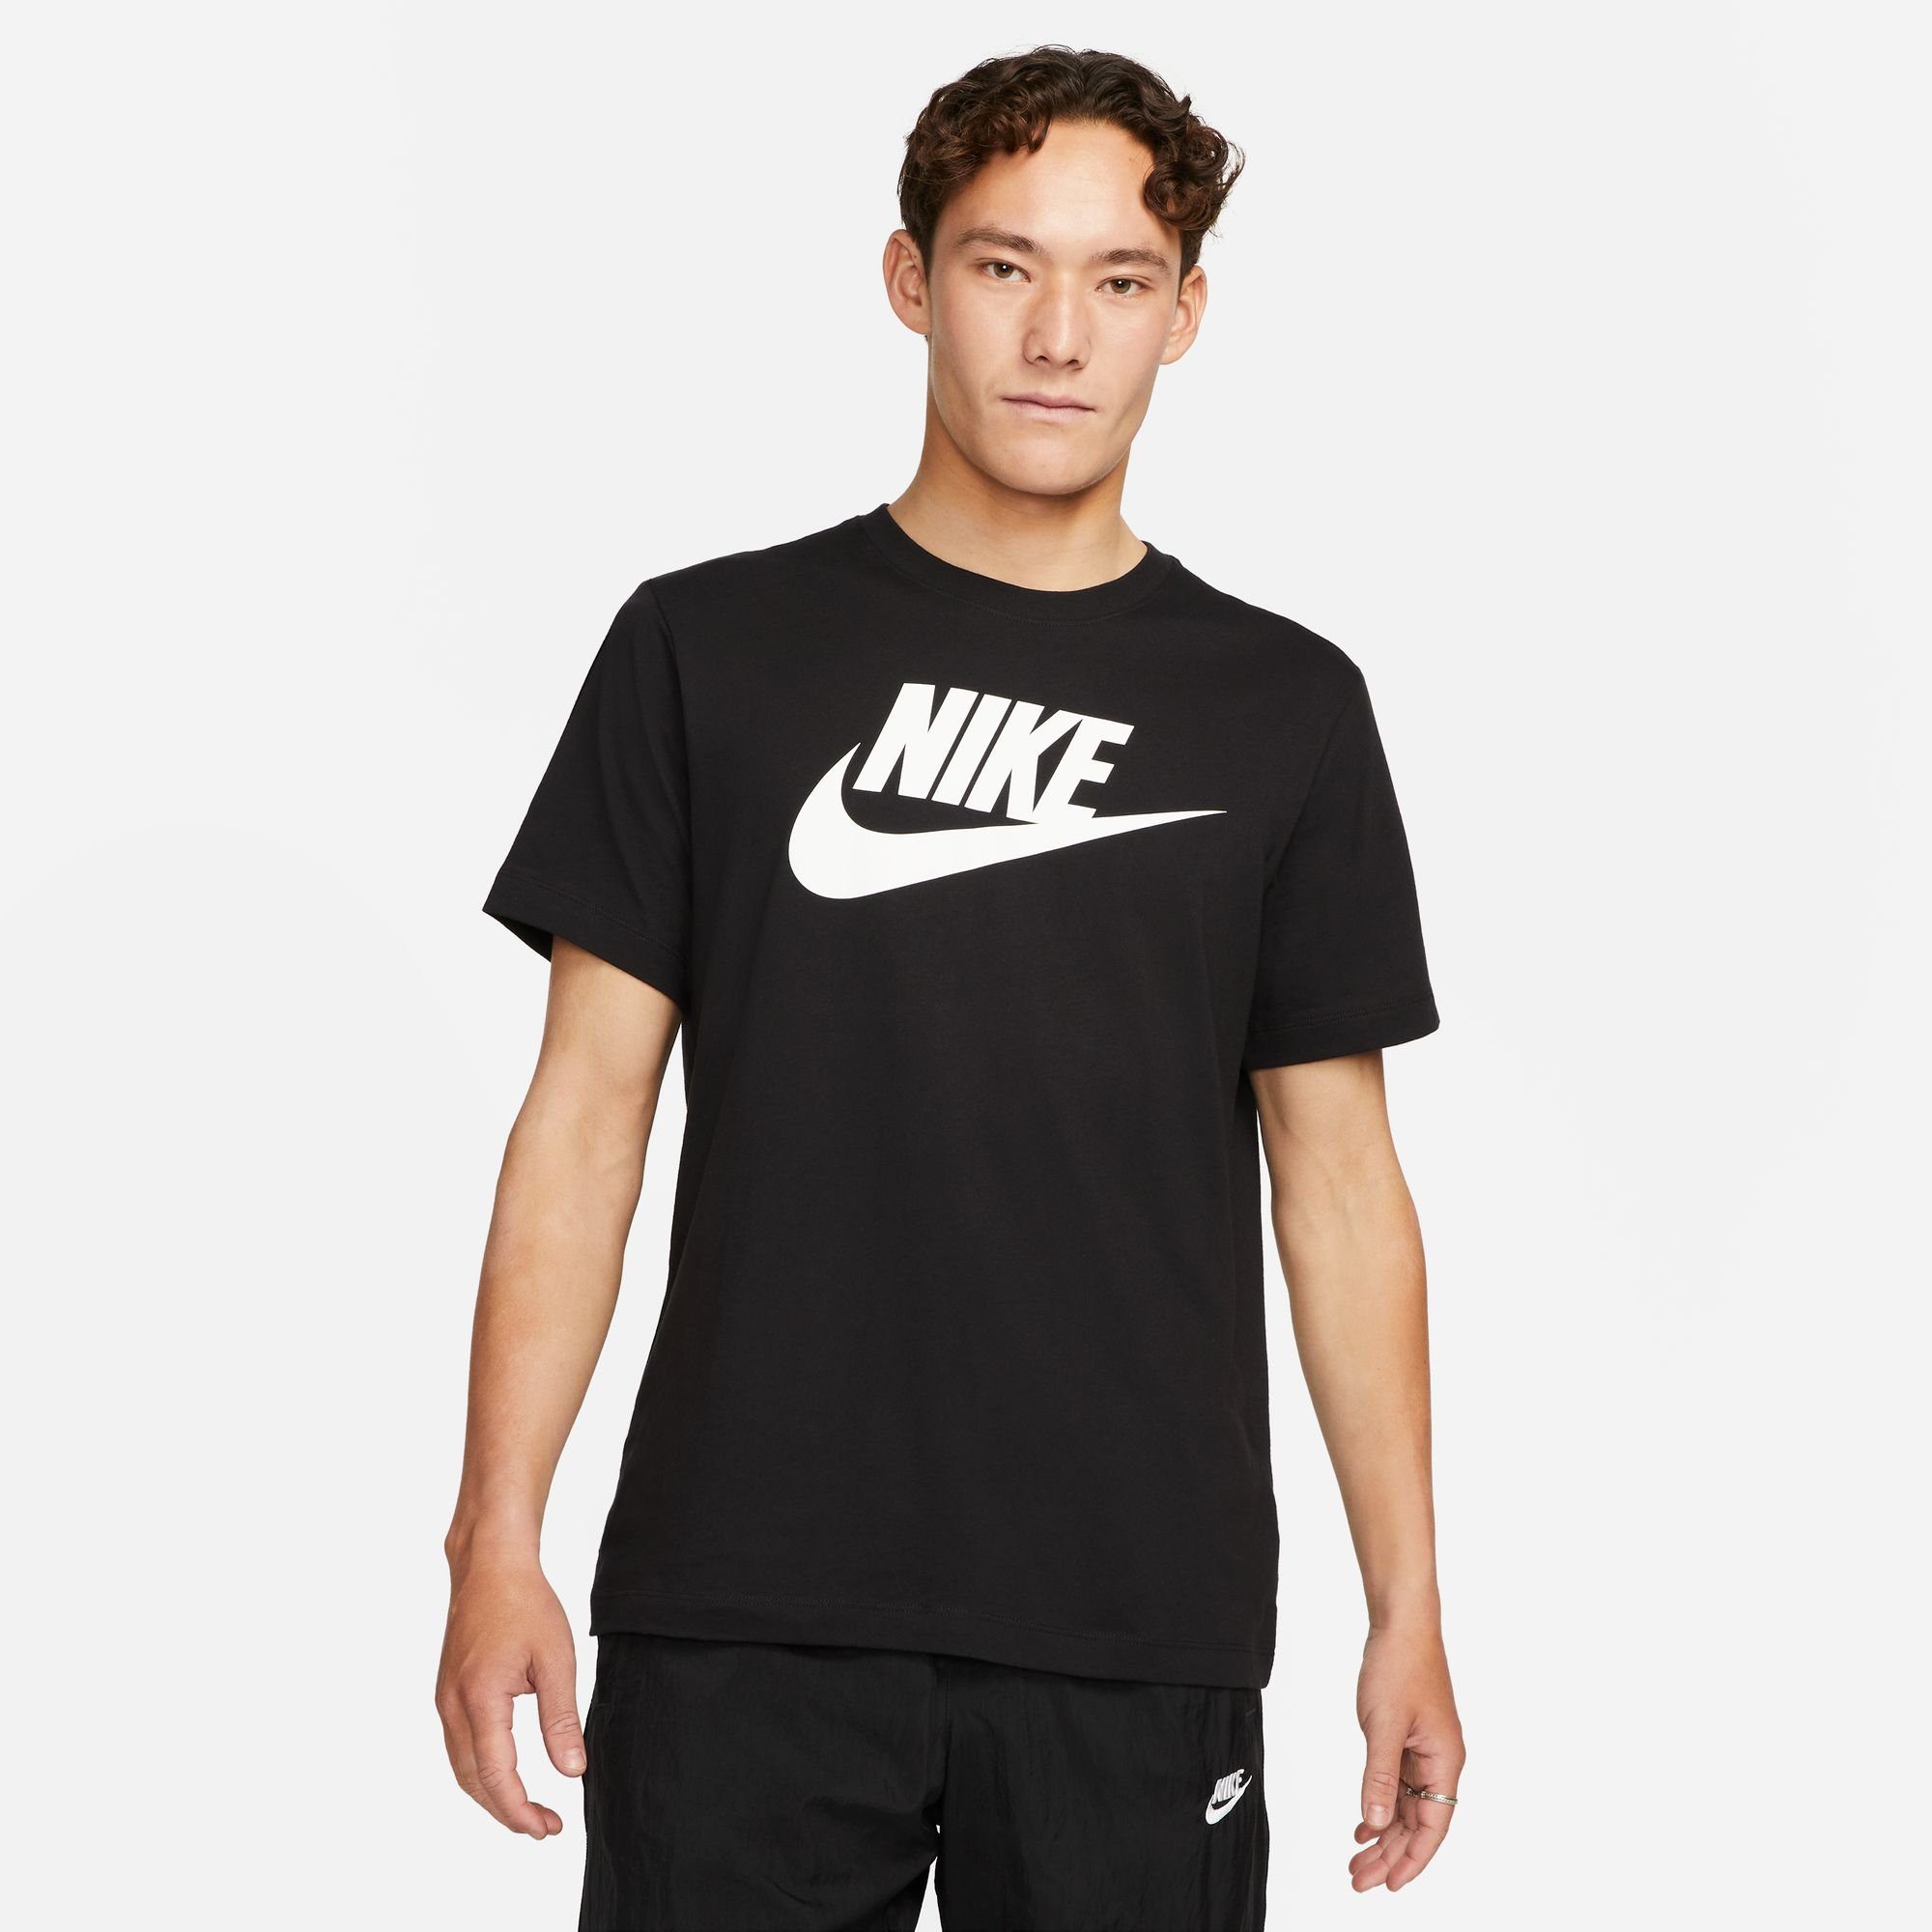 Nike Sportswear T-Shirt MEN'S T-SHIRT schwarz